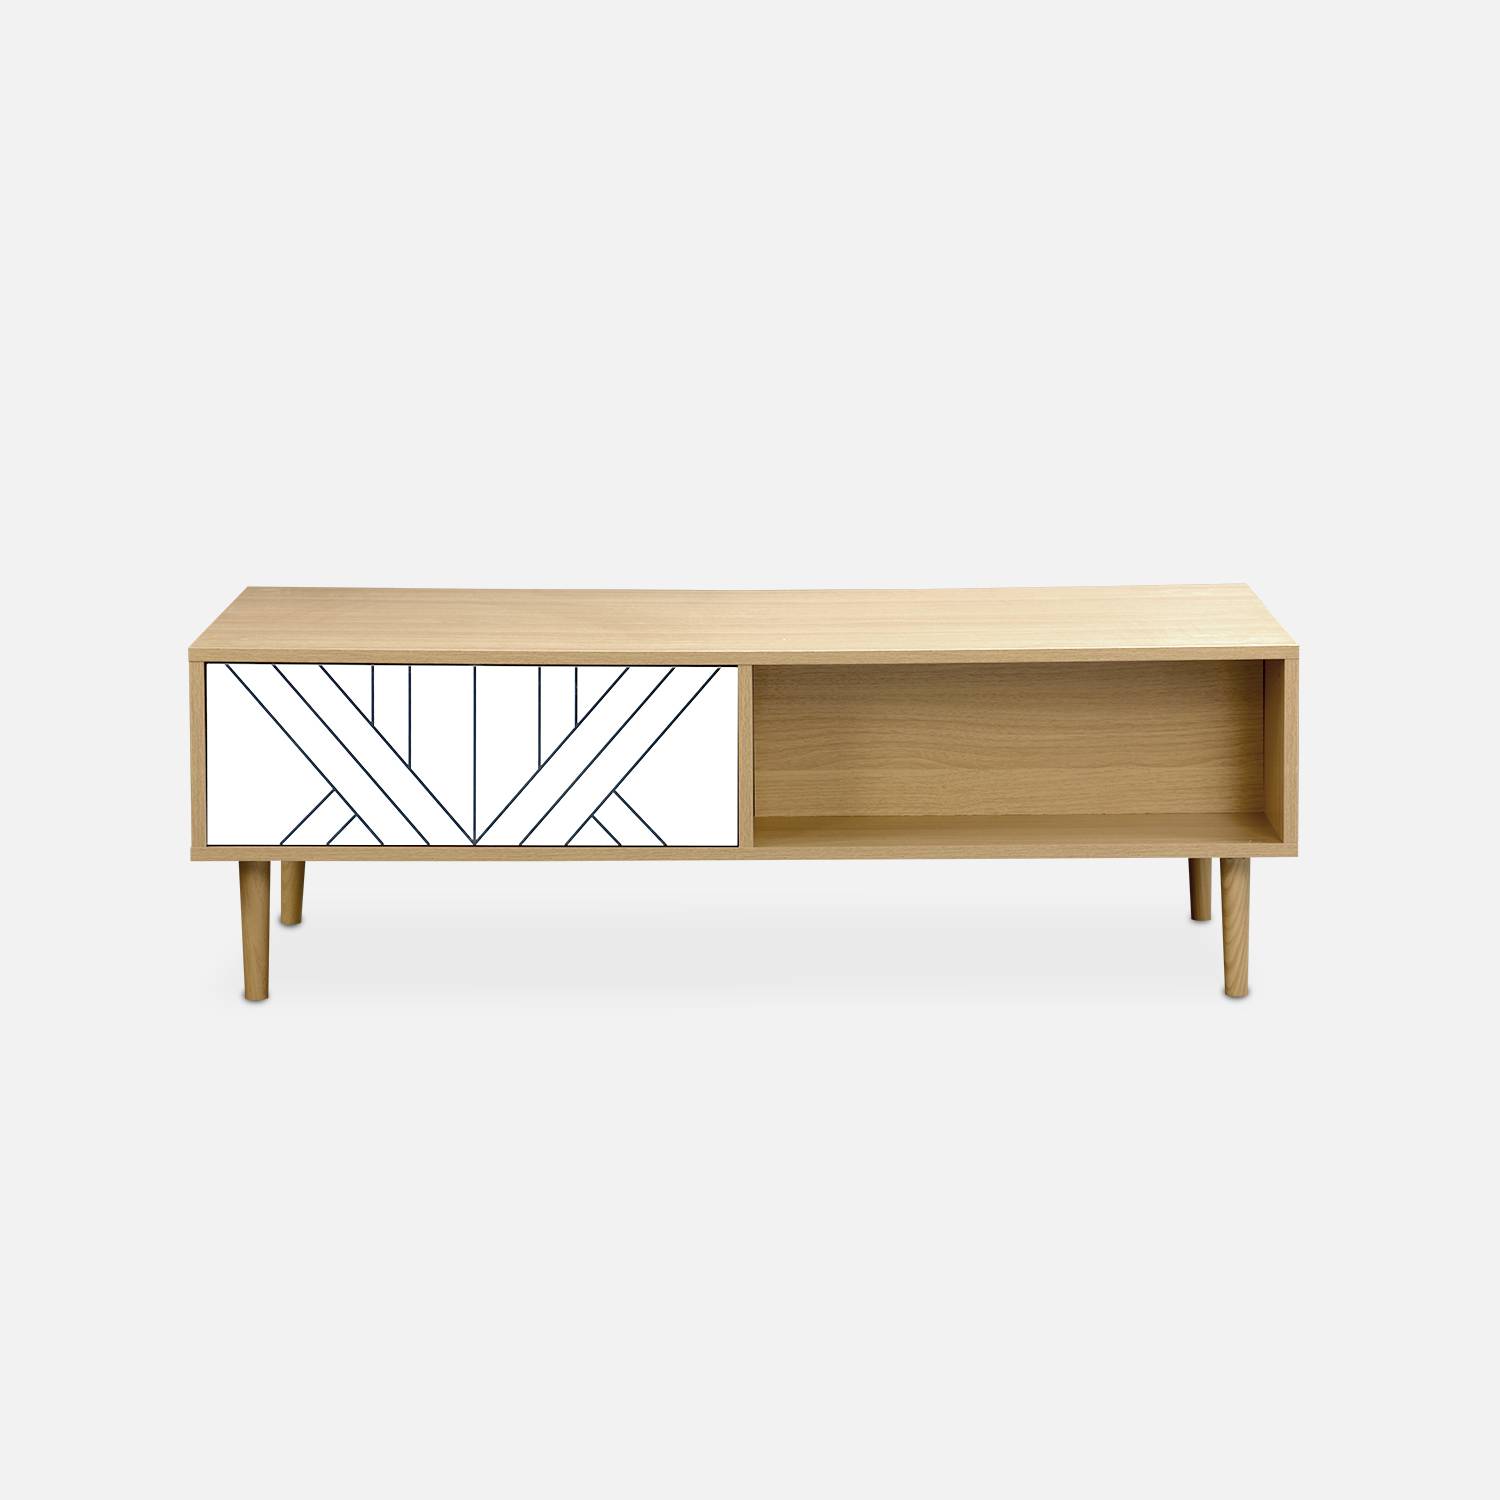 Tavolino in legno e decoro bianco - Mika - 2 cassetti, 2 vani portaoggetti, L 120 x L 55 x H 40cm,sweeek,Photo5